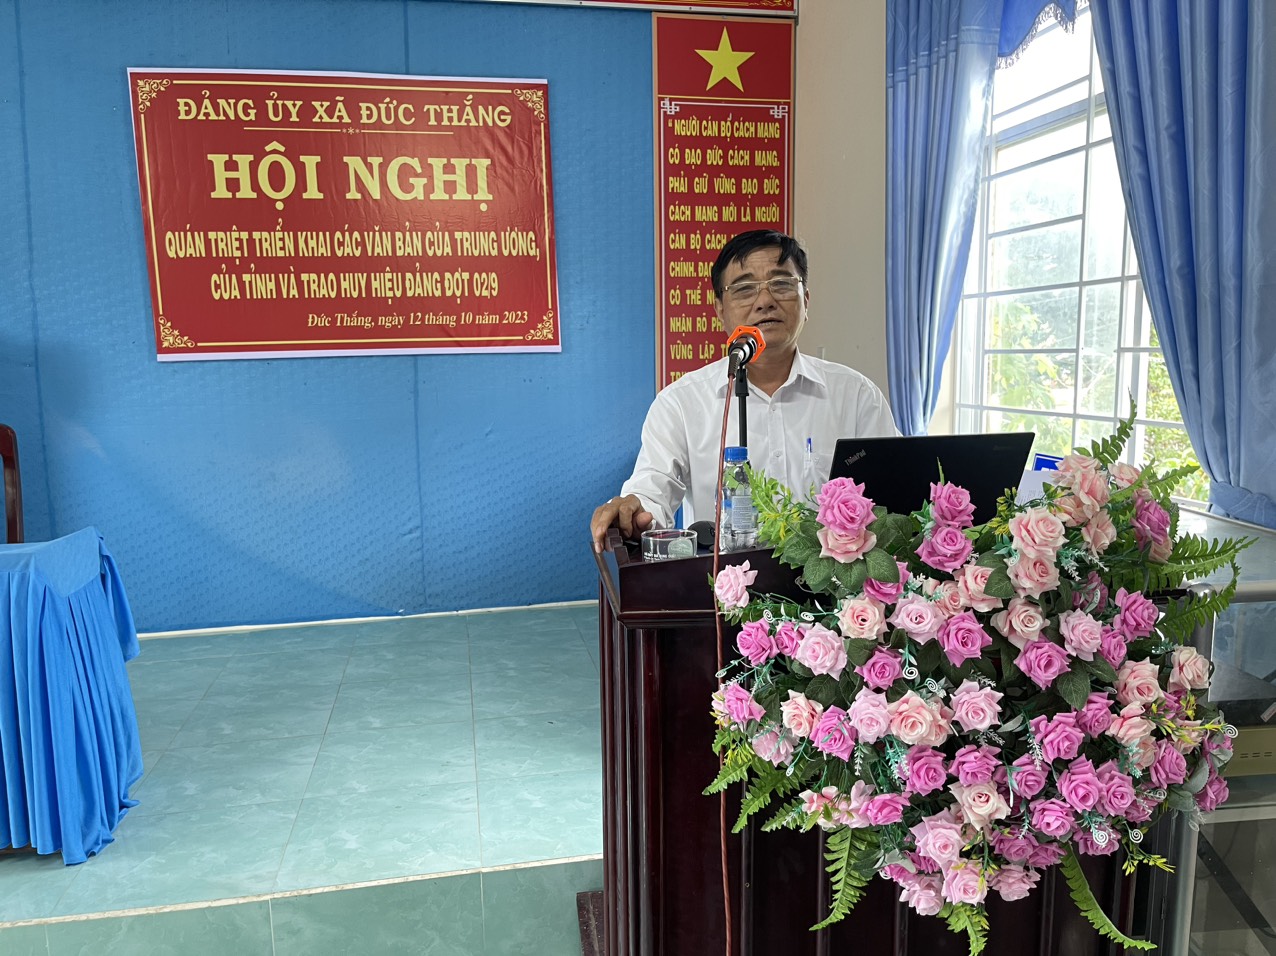 Đồng chí Trần Như Hiệp- BT Đảng ủy phát biểu bế mạc hội nghị